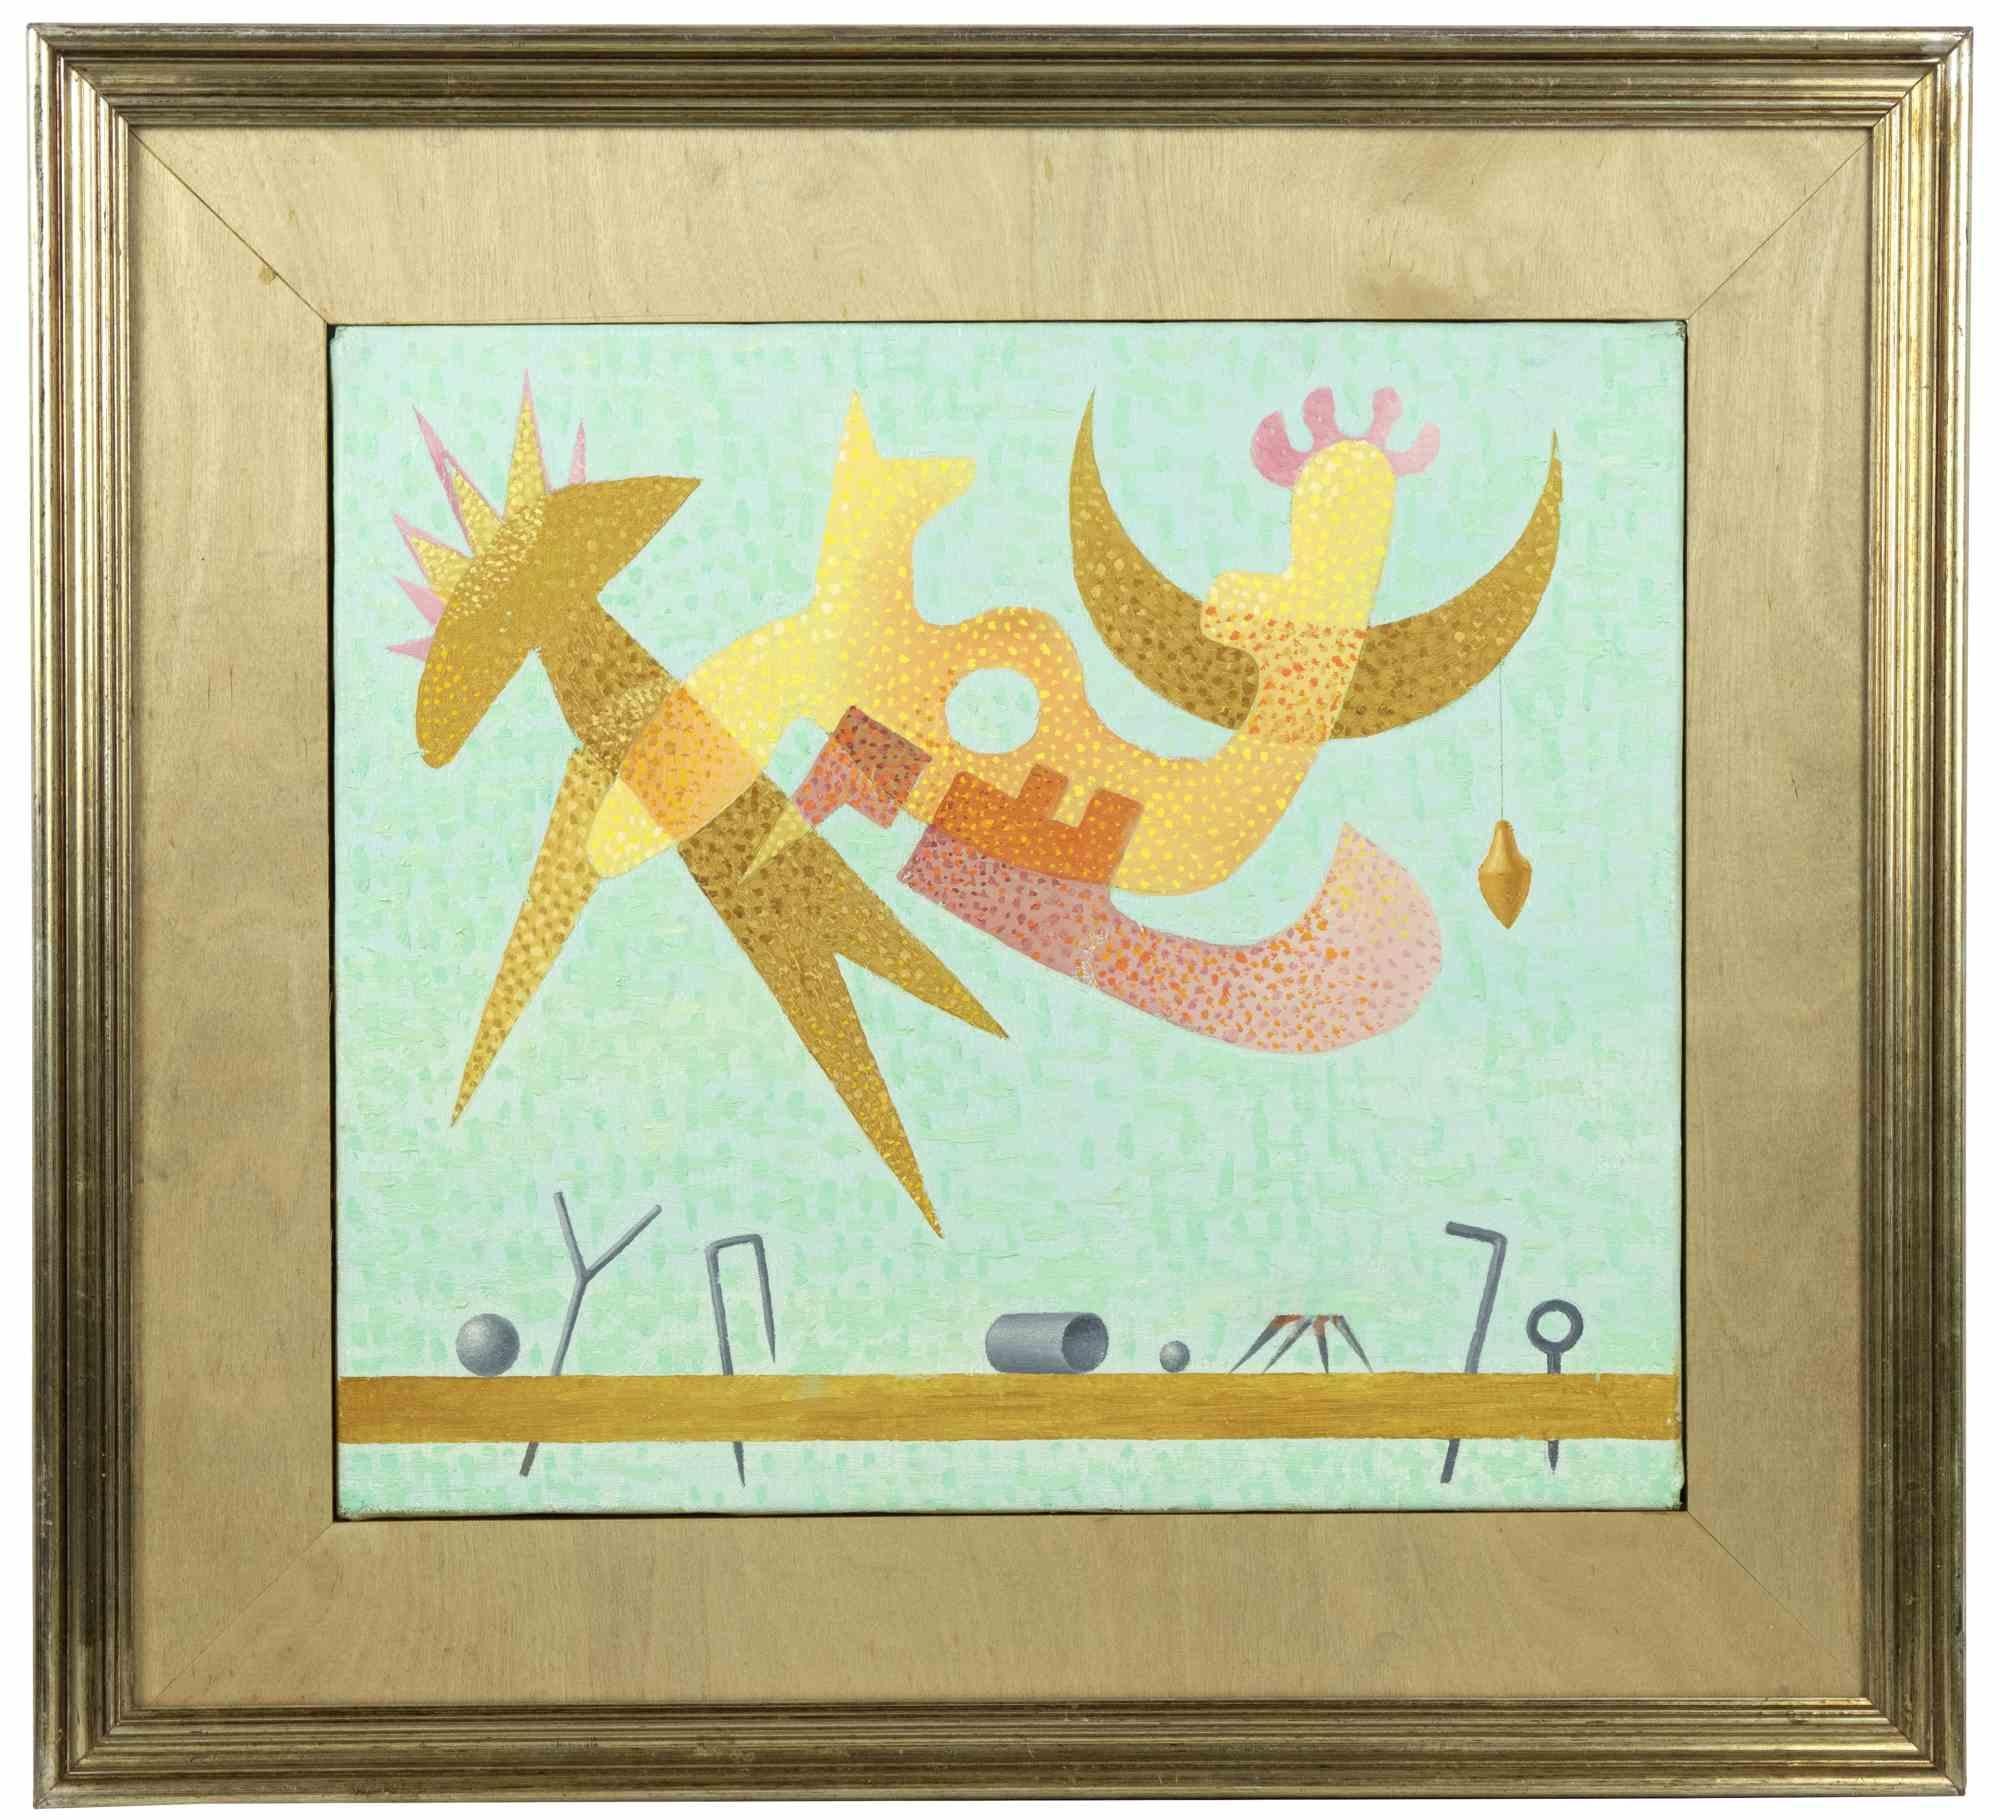 Little Sky 1 ist ein zeitgenössisches Kunstwerk von Leo Guida aus dem Jahr 1979.

Gemischte farbige Tempera auf Papier.

Inklusive Rahmen: 52,5 x 57,5 cm

Originaltitel: Piccolo Cielo 1

Leo Guida  (1992 - 2017). Mit seinem Gespür für aktuelle